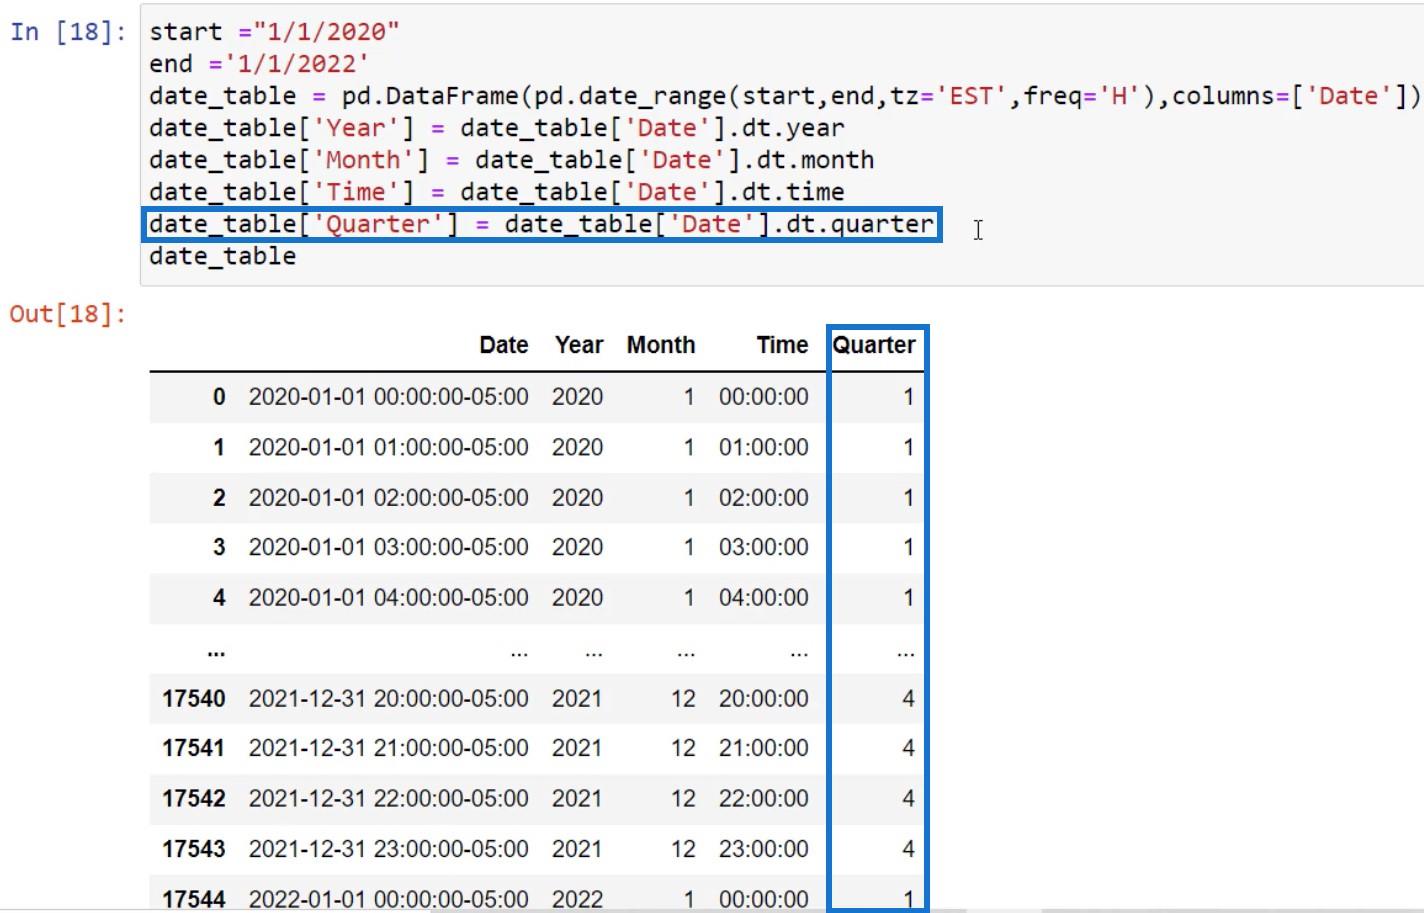 Python スクリプトを使用した LuckyTemplates で日付テーブルを作成する